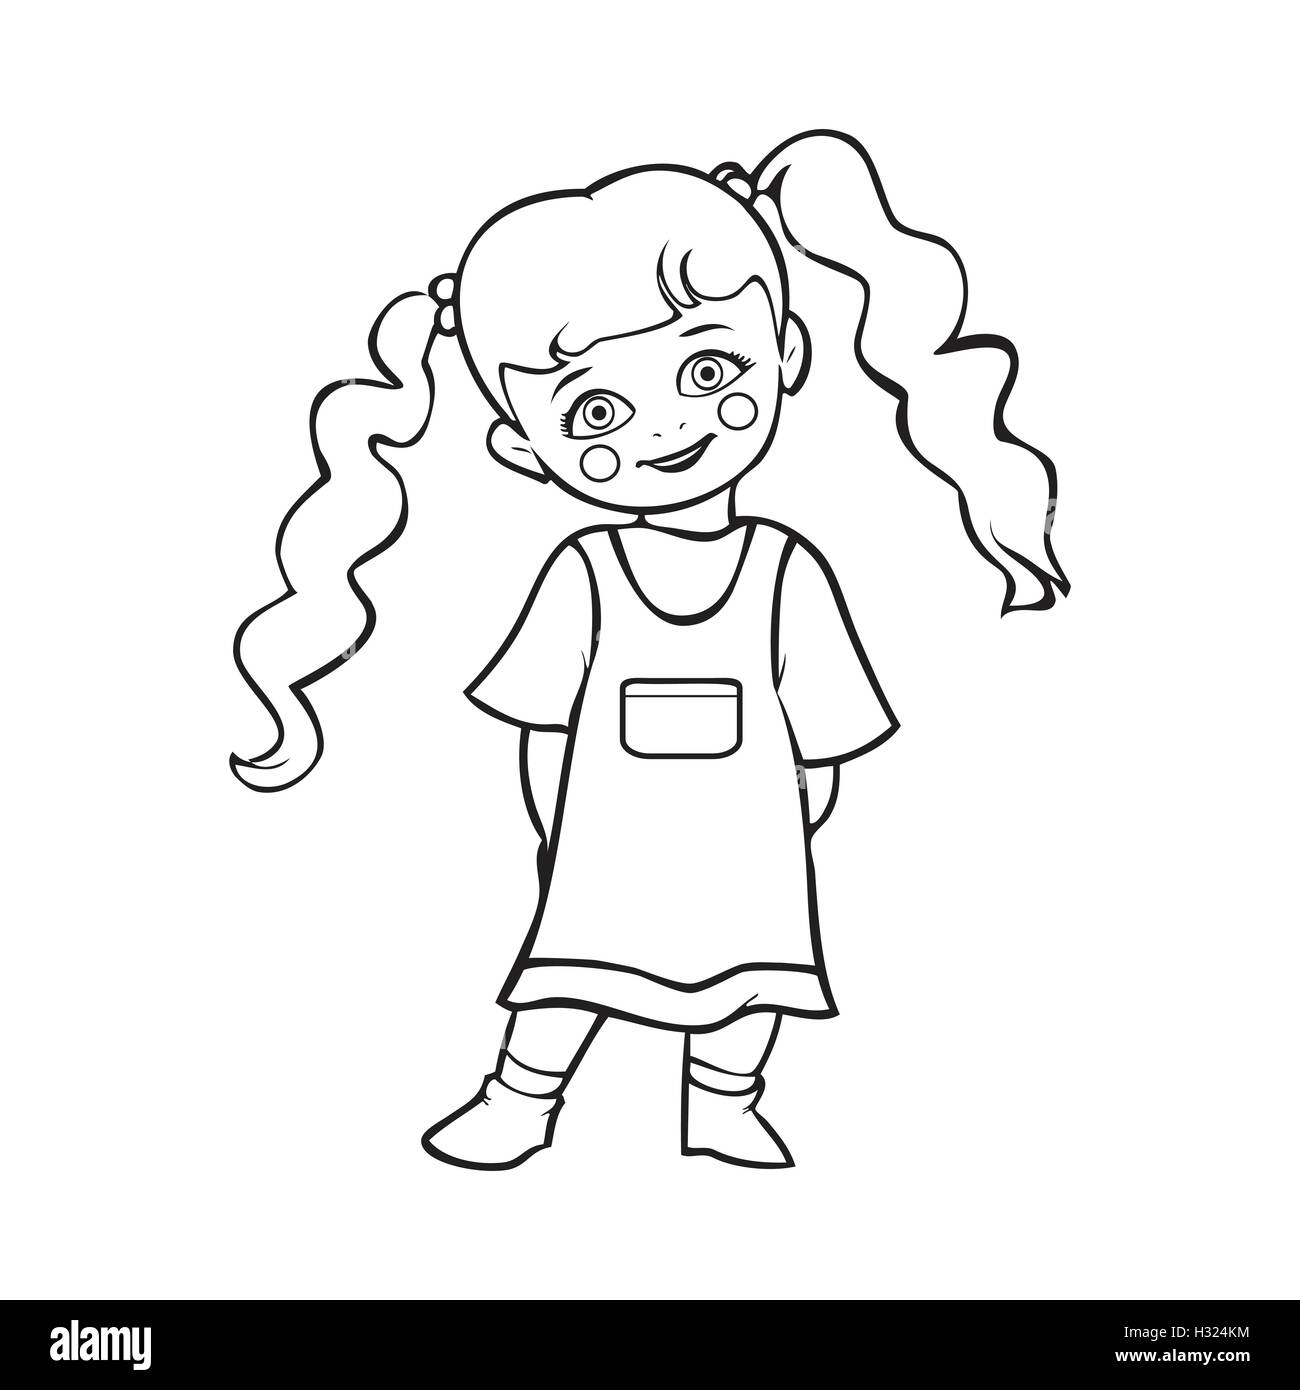 Baby Girl Drawing Images  Free Download on Freepik